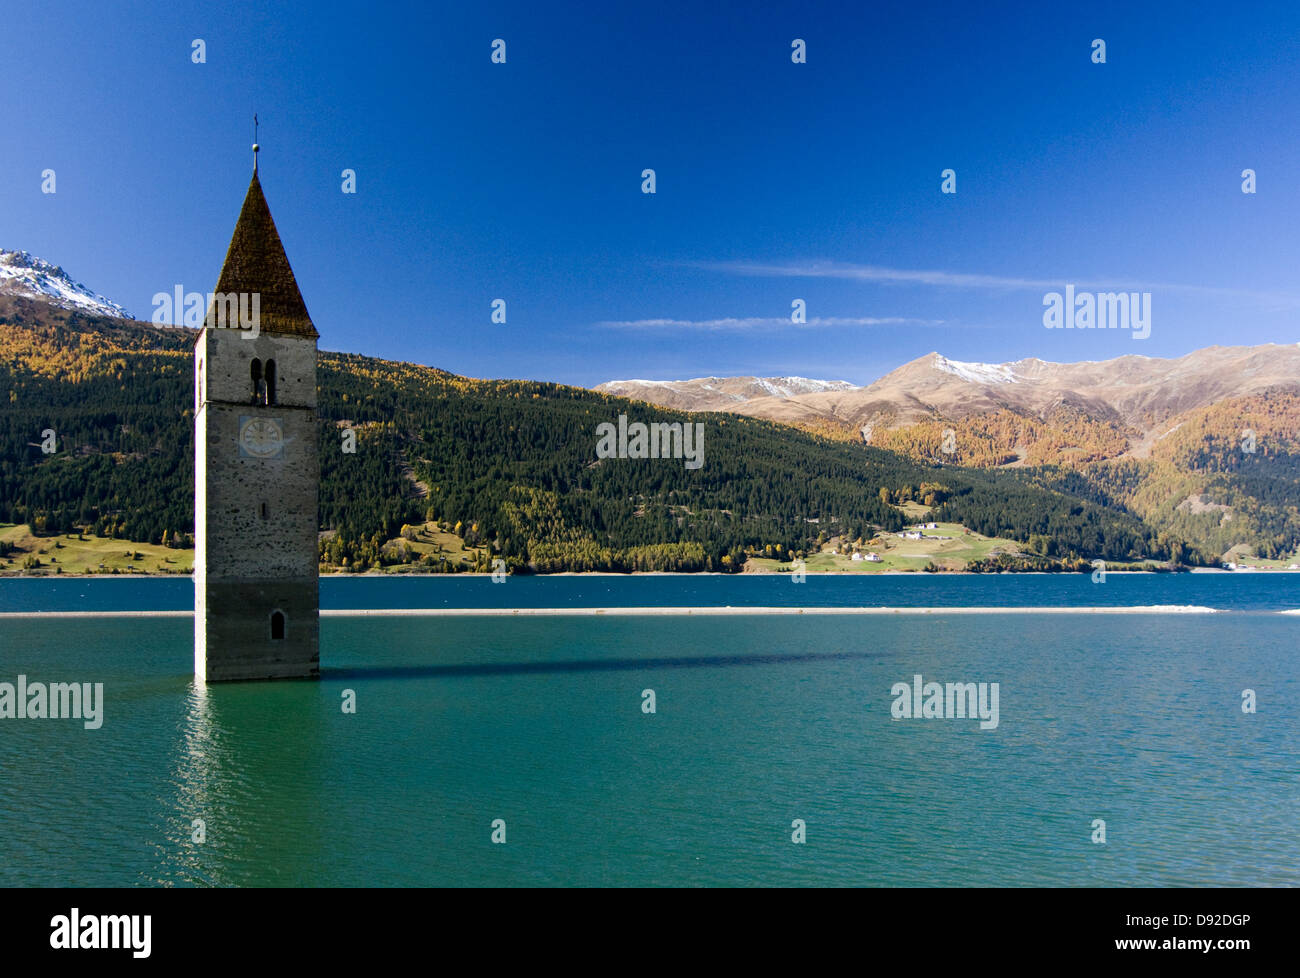 Kirchturm von Graun im Reschensee (lago di Resia) bell tower of Graun village submerged in lake Stock Photo